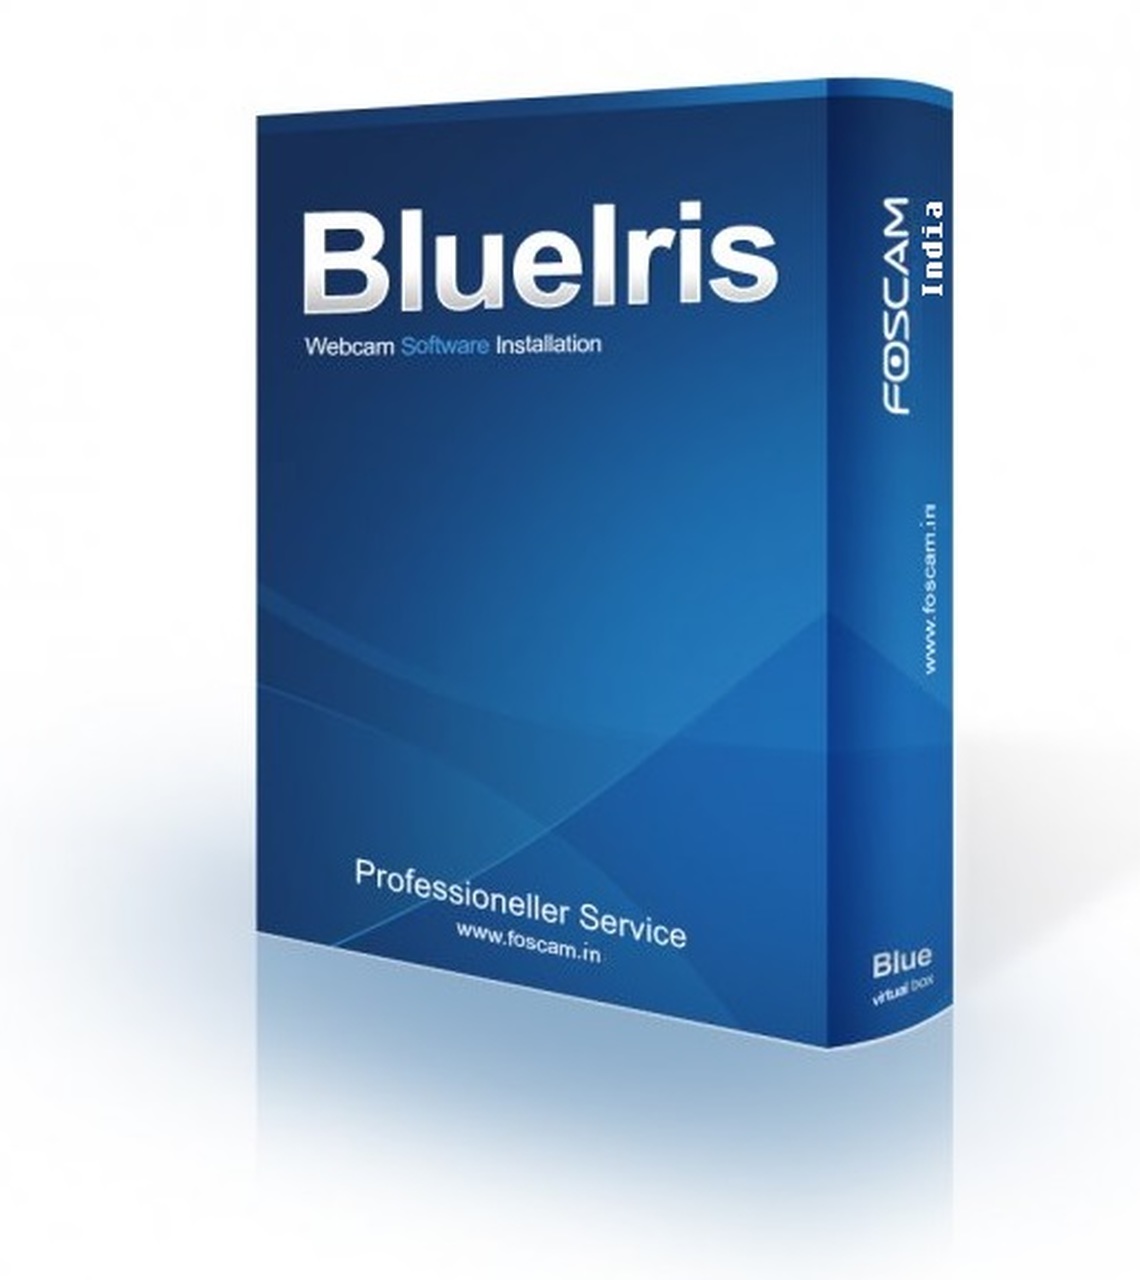 Blue iris software torrent